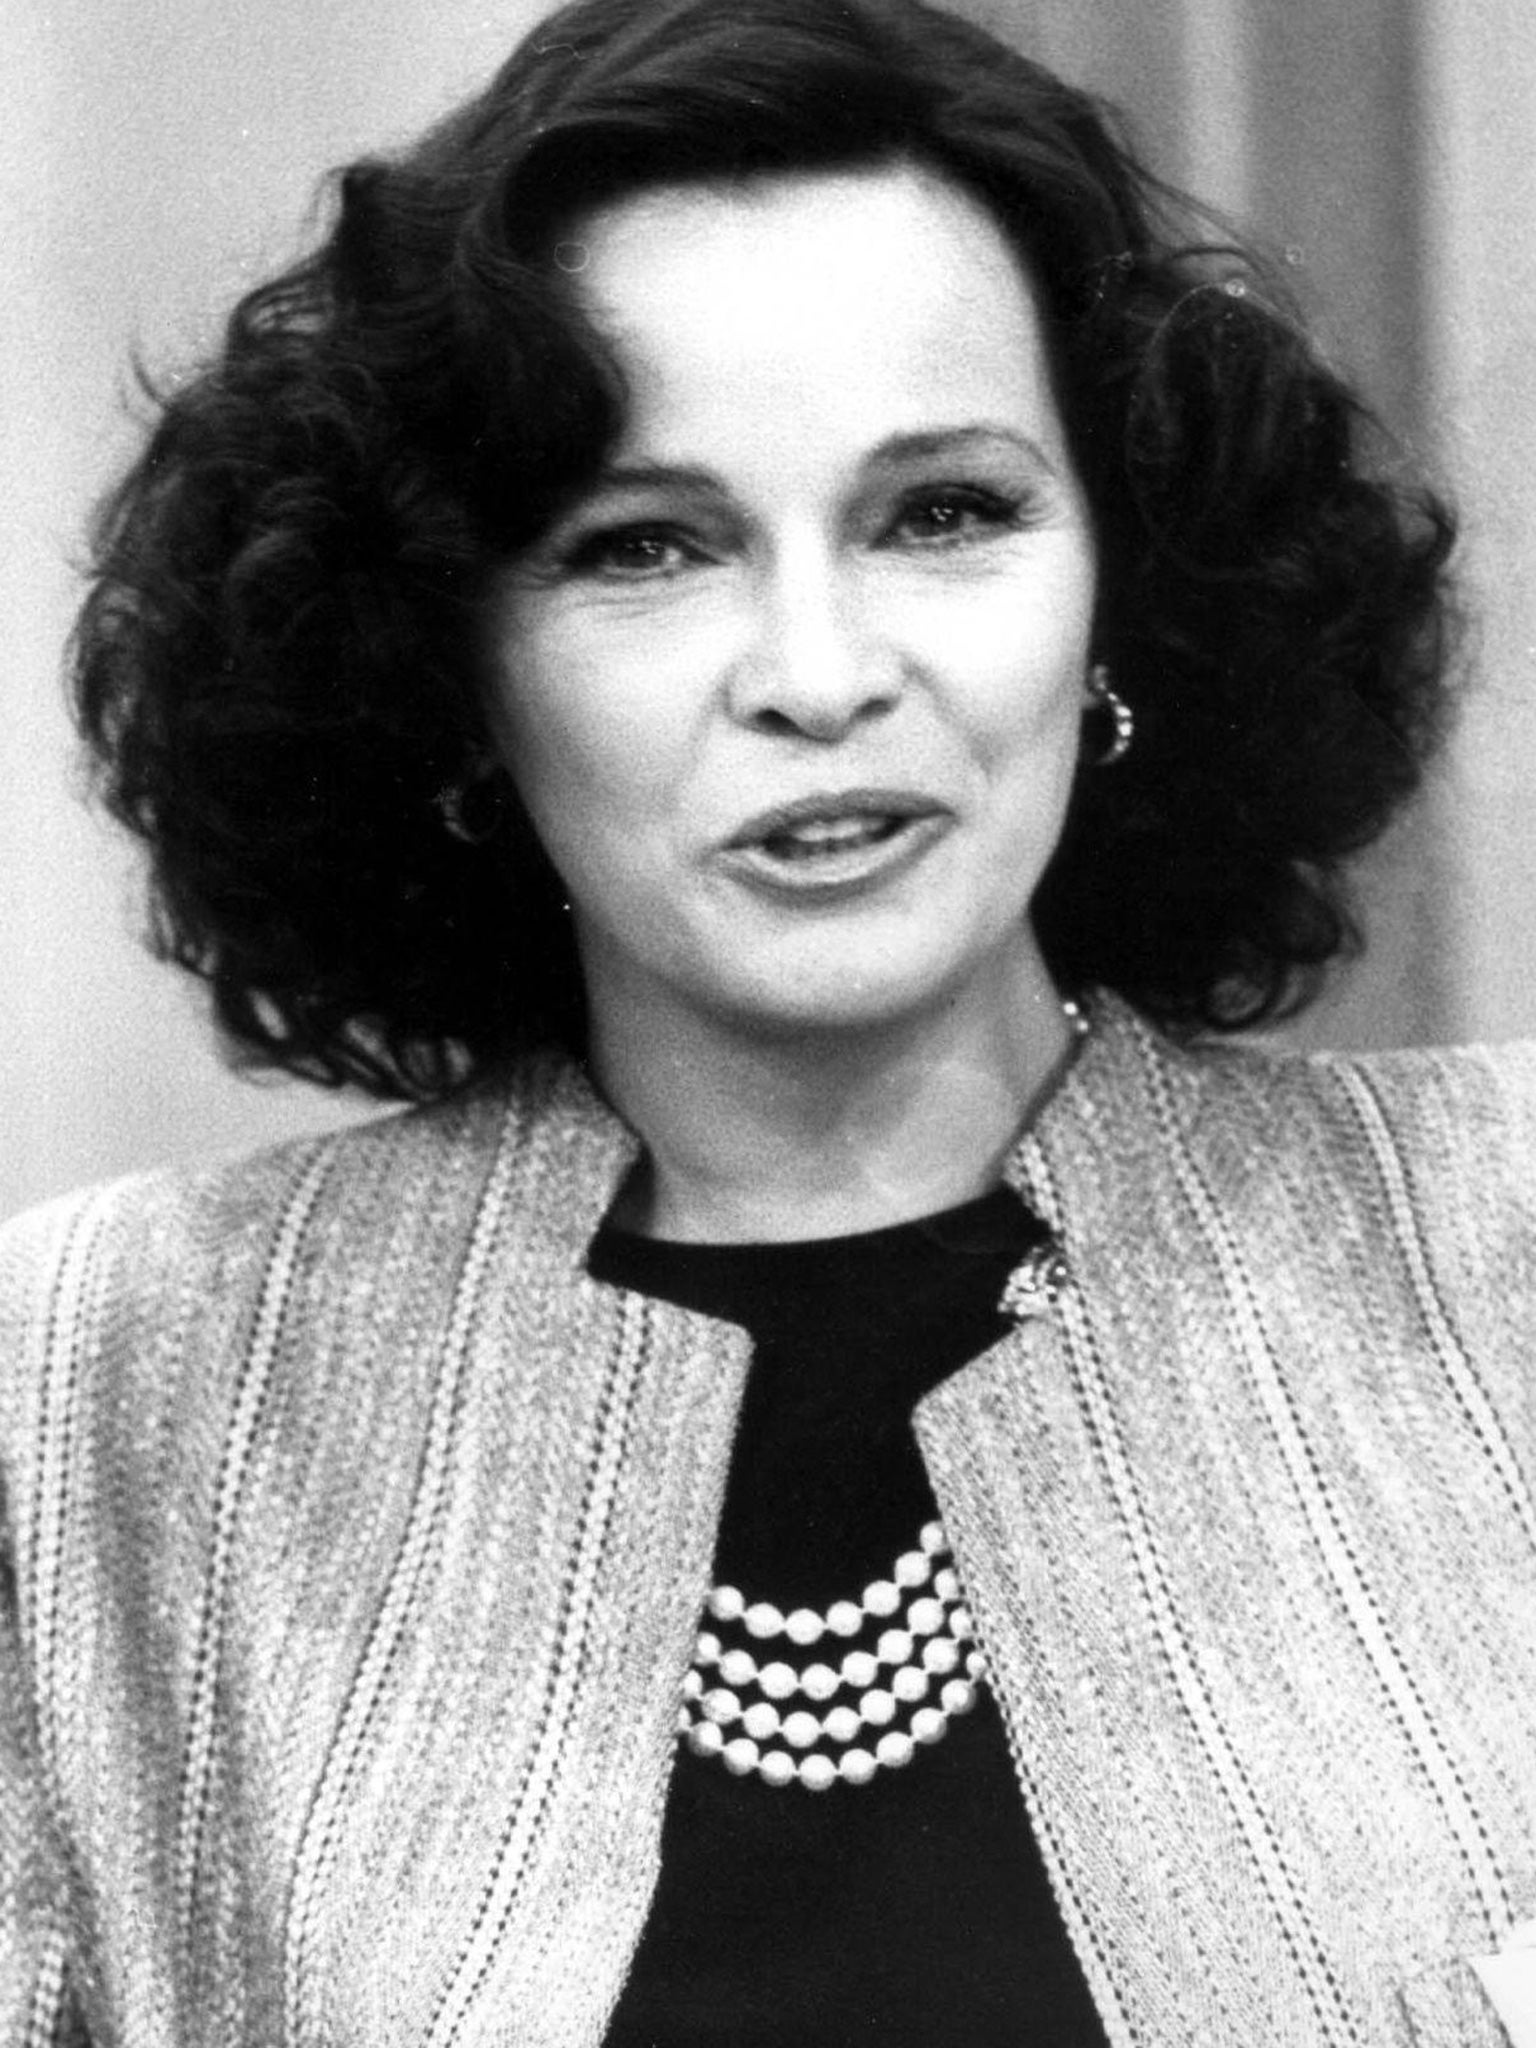 Laura Antonelli in 1990